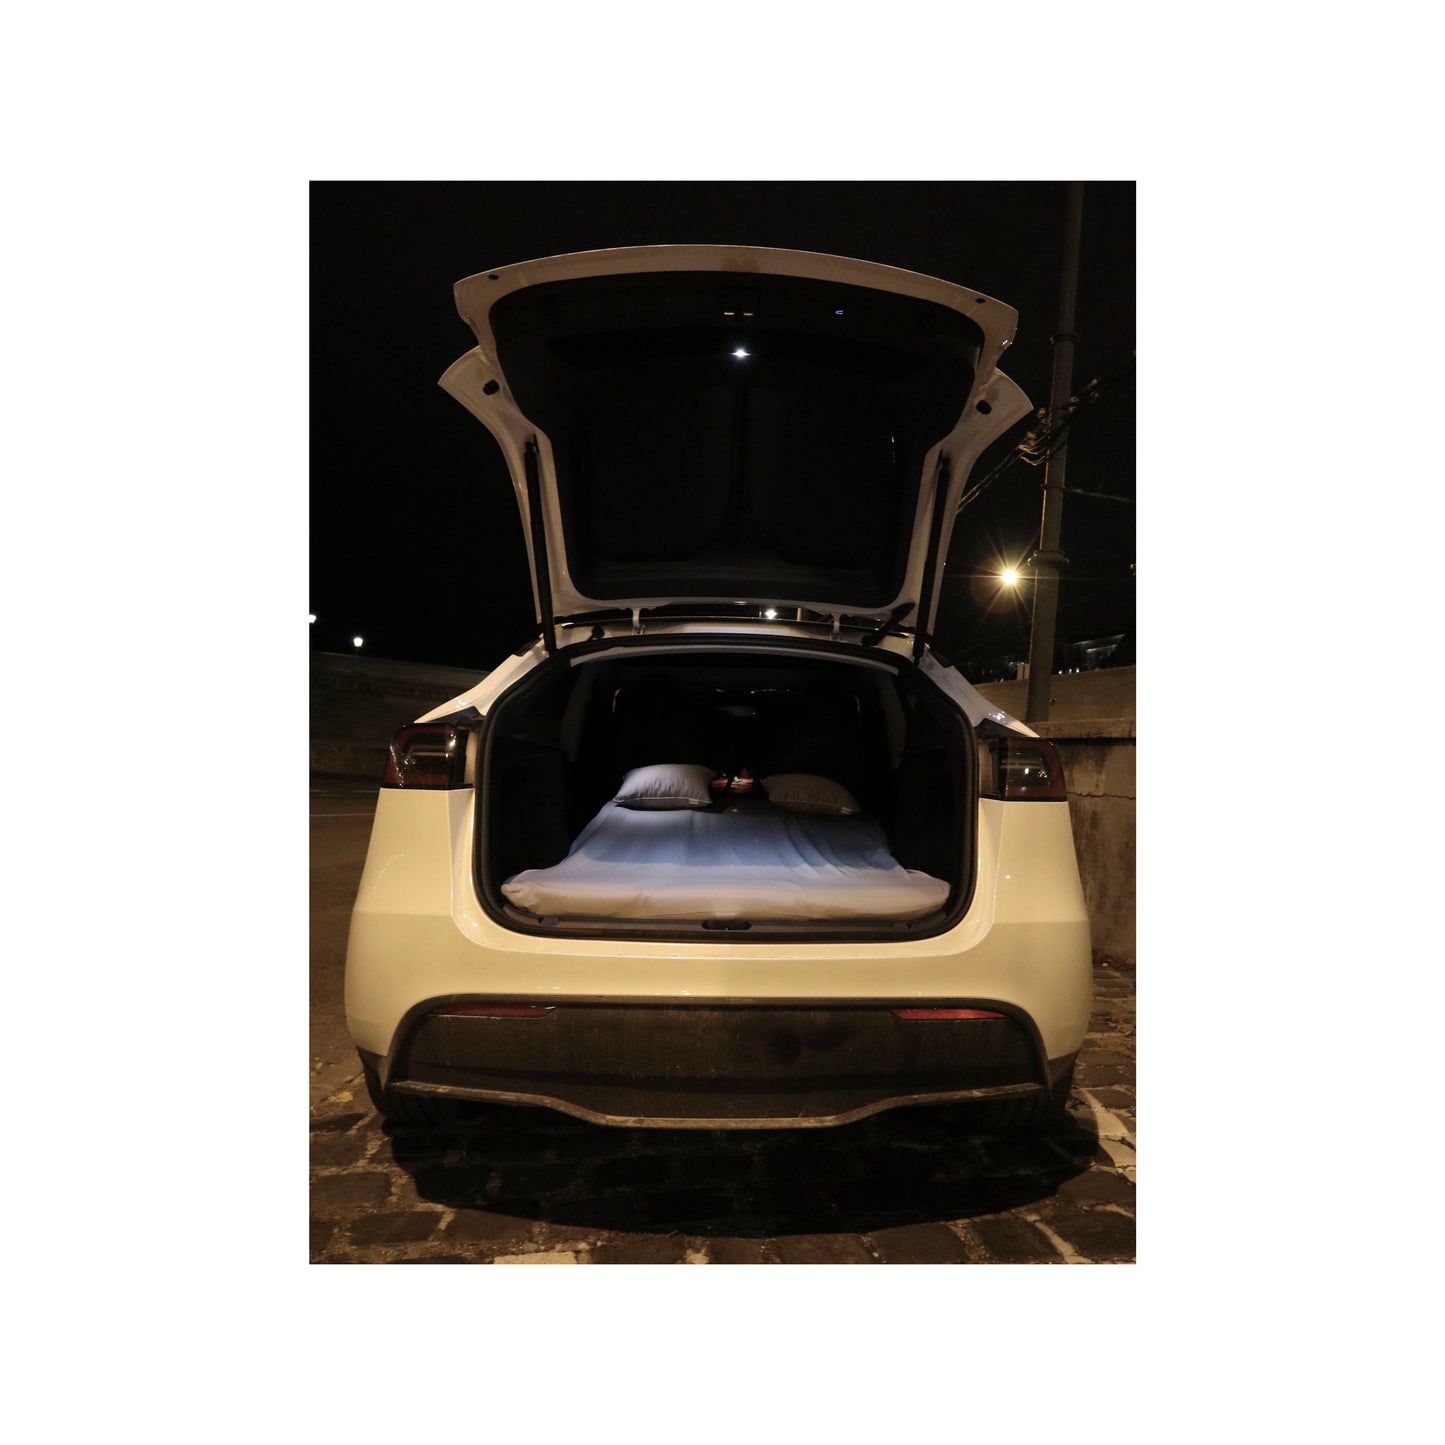 EV-MATS Basic CAMP SET dla Tesla Model Y zawiera materac Tesli, wodoodporną torbę, która mieści się w tylnej klapie Tesla Model Y, prześcieradło, kołdrę, 2 poduszki i poszewkę na poduszkę